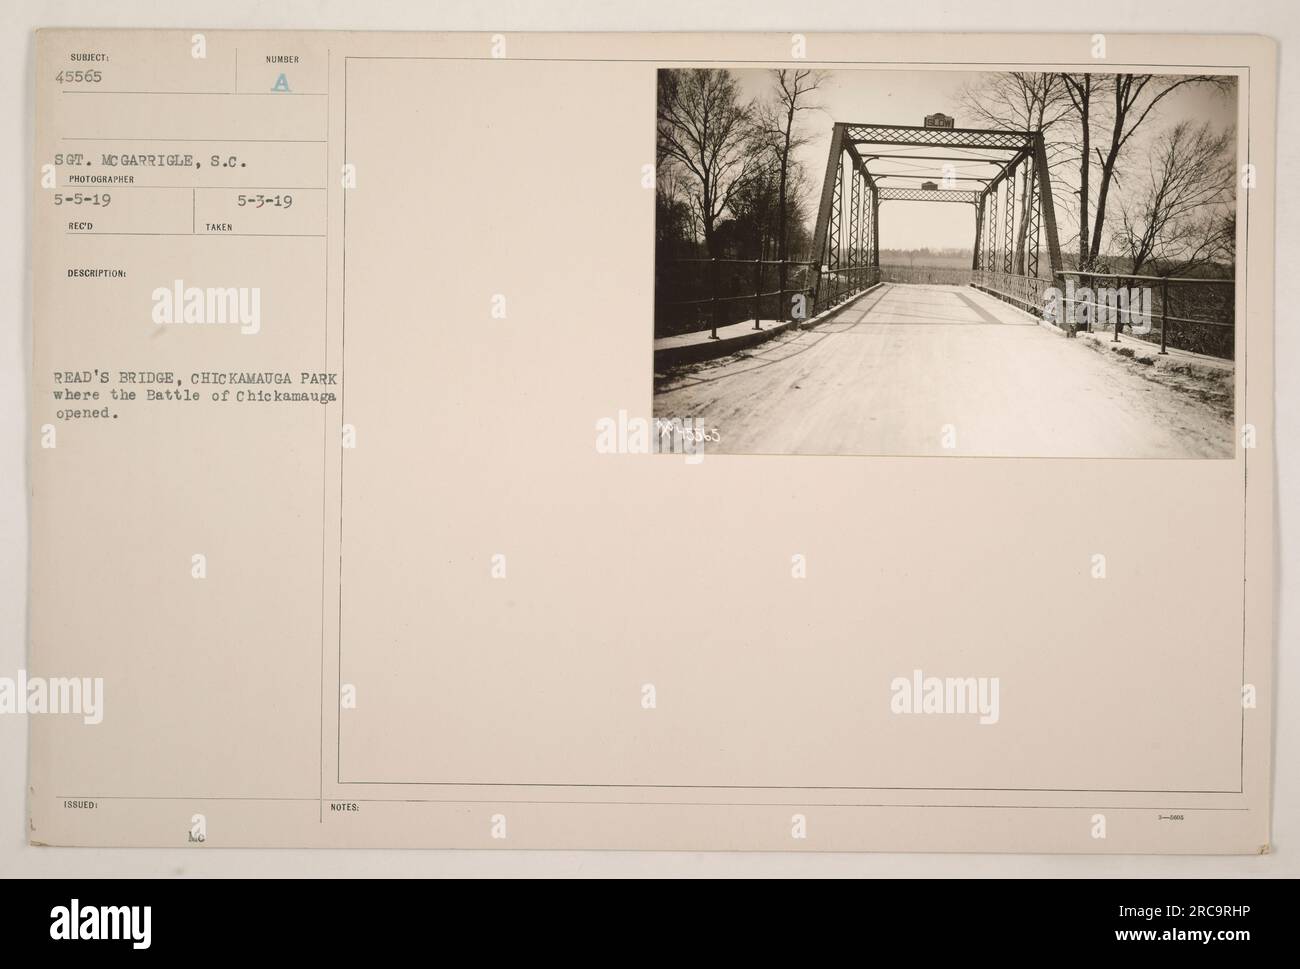 Questa fotografia cattura il ponte di Read's nel Parco Chickamauga, il luogo dove ebbe inizio la battaglia di Chickamauga durante la prima guerra mondiale Fu presa da Subiect 45565 Sgt. MC Garrigle il 5 maggio 1919. La foto è stata rilasciata come parte di una descrizione reco e sono incluse anche note del 3 maggio 1919. Foto Stock